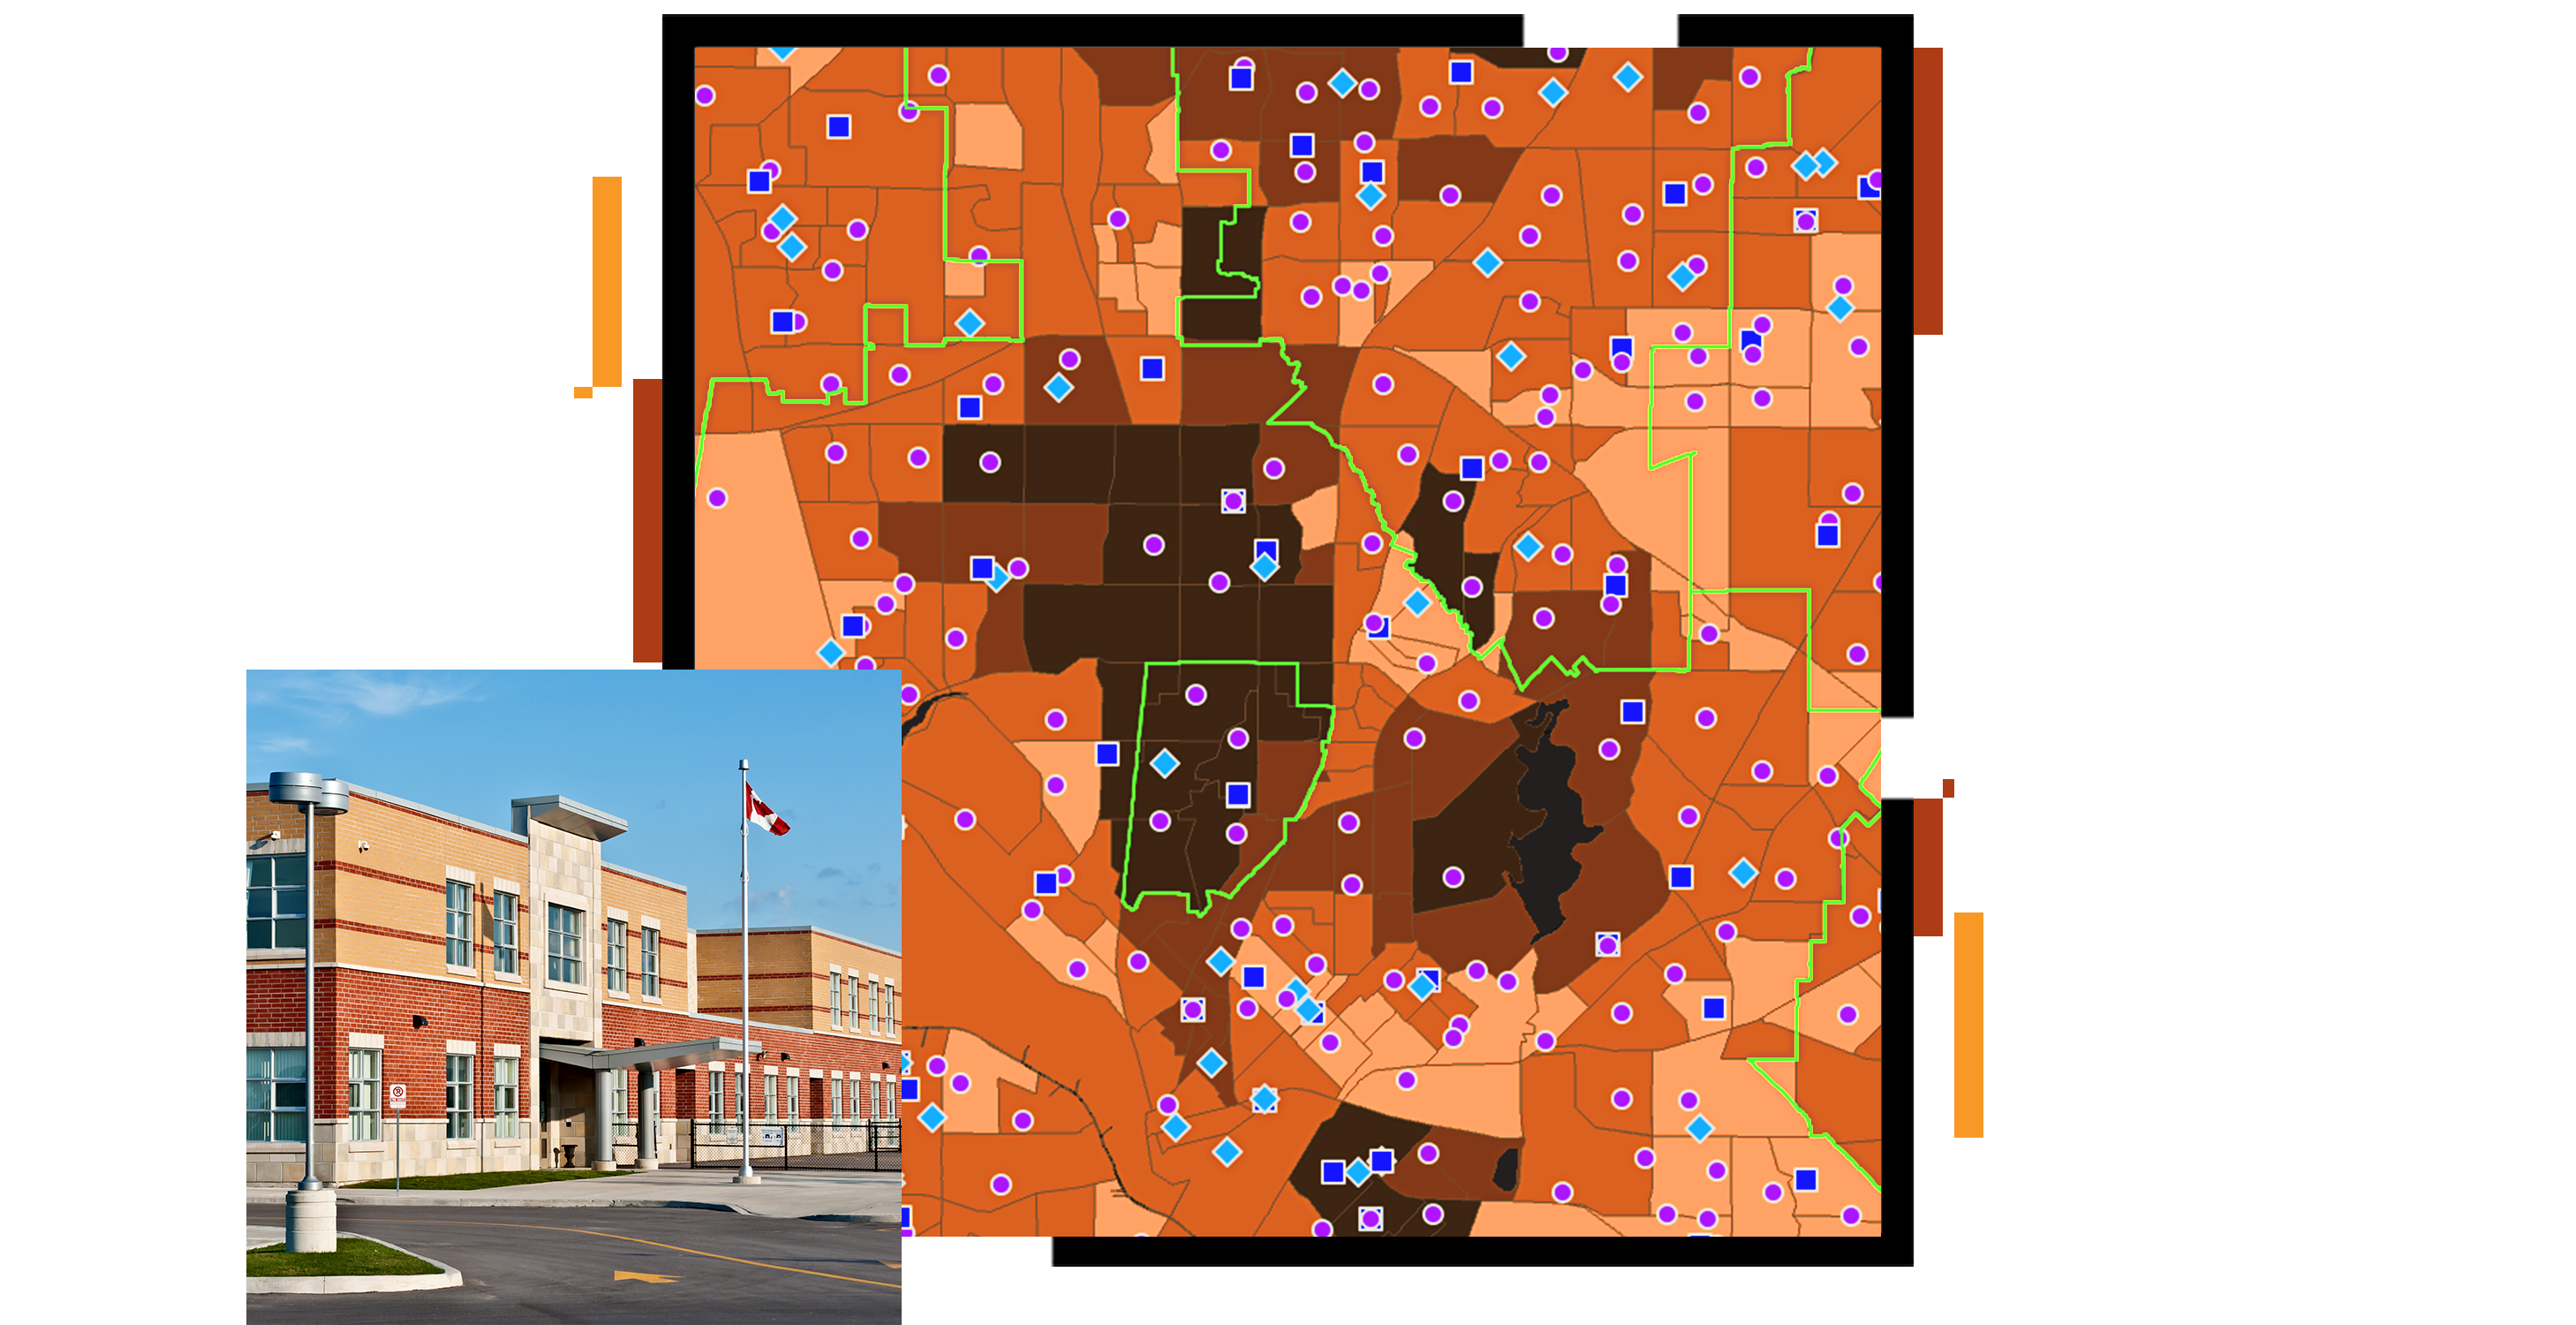 خريطة منطقة باللون البرتقالي والبني مبعثرة بنقاط خريطة أرجوانية وزرقاء، وصورة صغيرة لمدرسة ثانوية حديثة باللون البرتقالي والبيج فوقها سماء زرقاء صافية